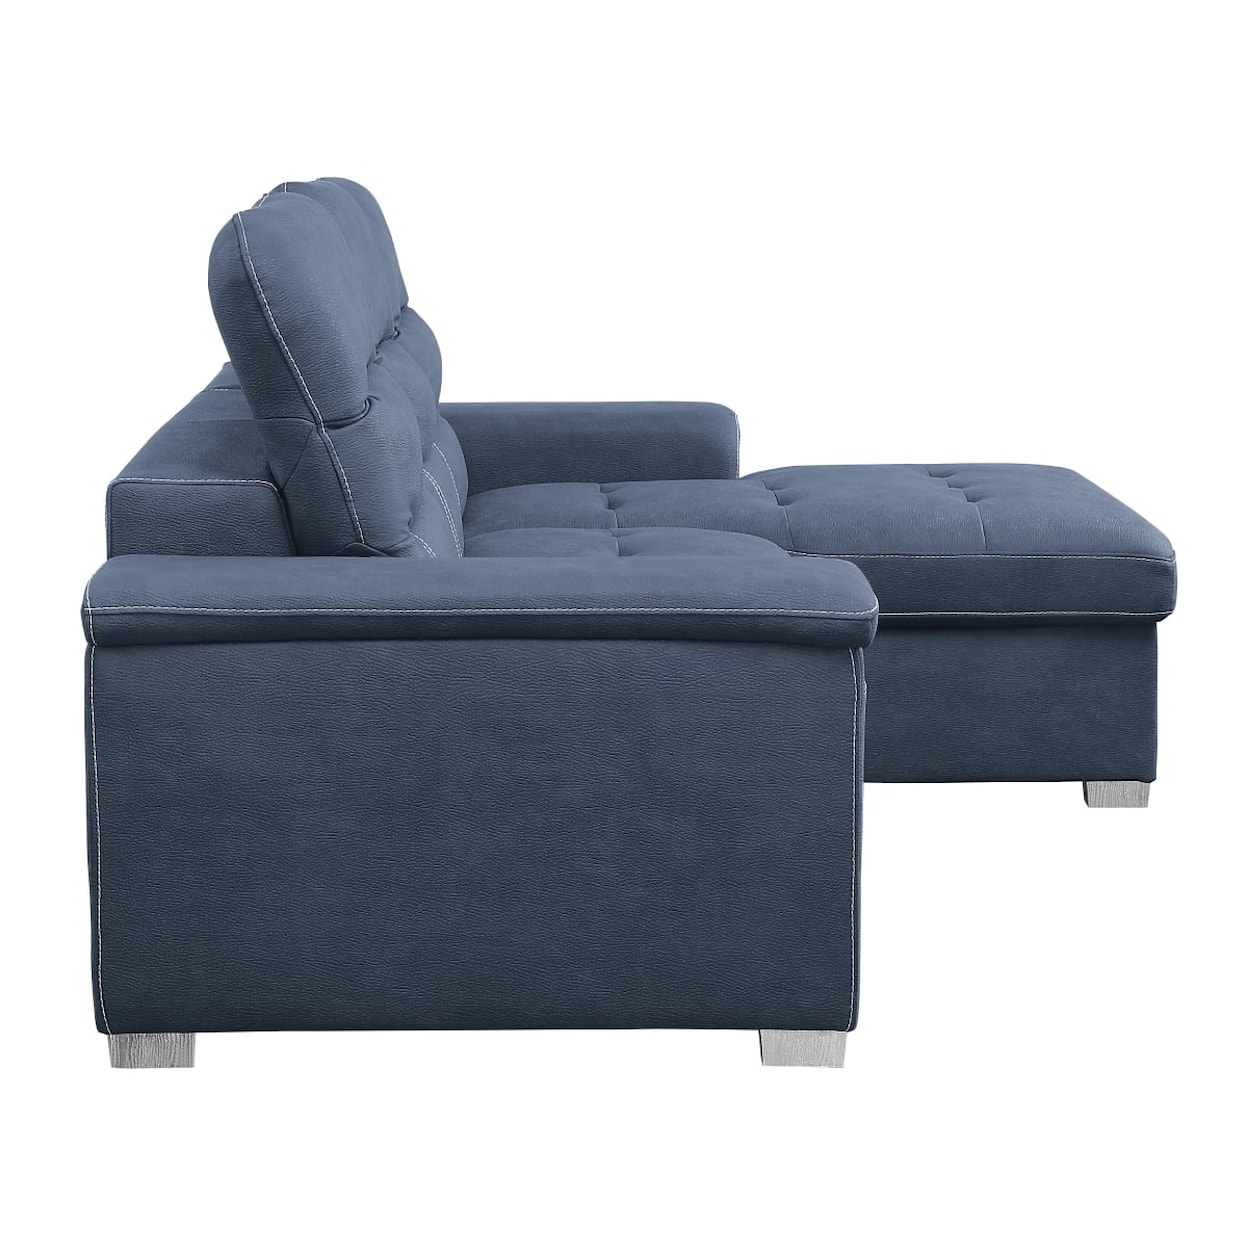 Homelegance Alfio 2-Piece Sectional Sofa